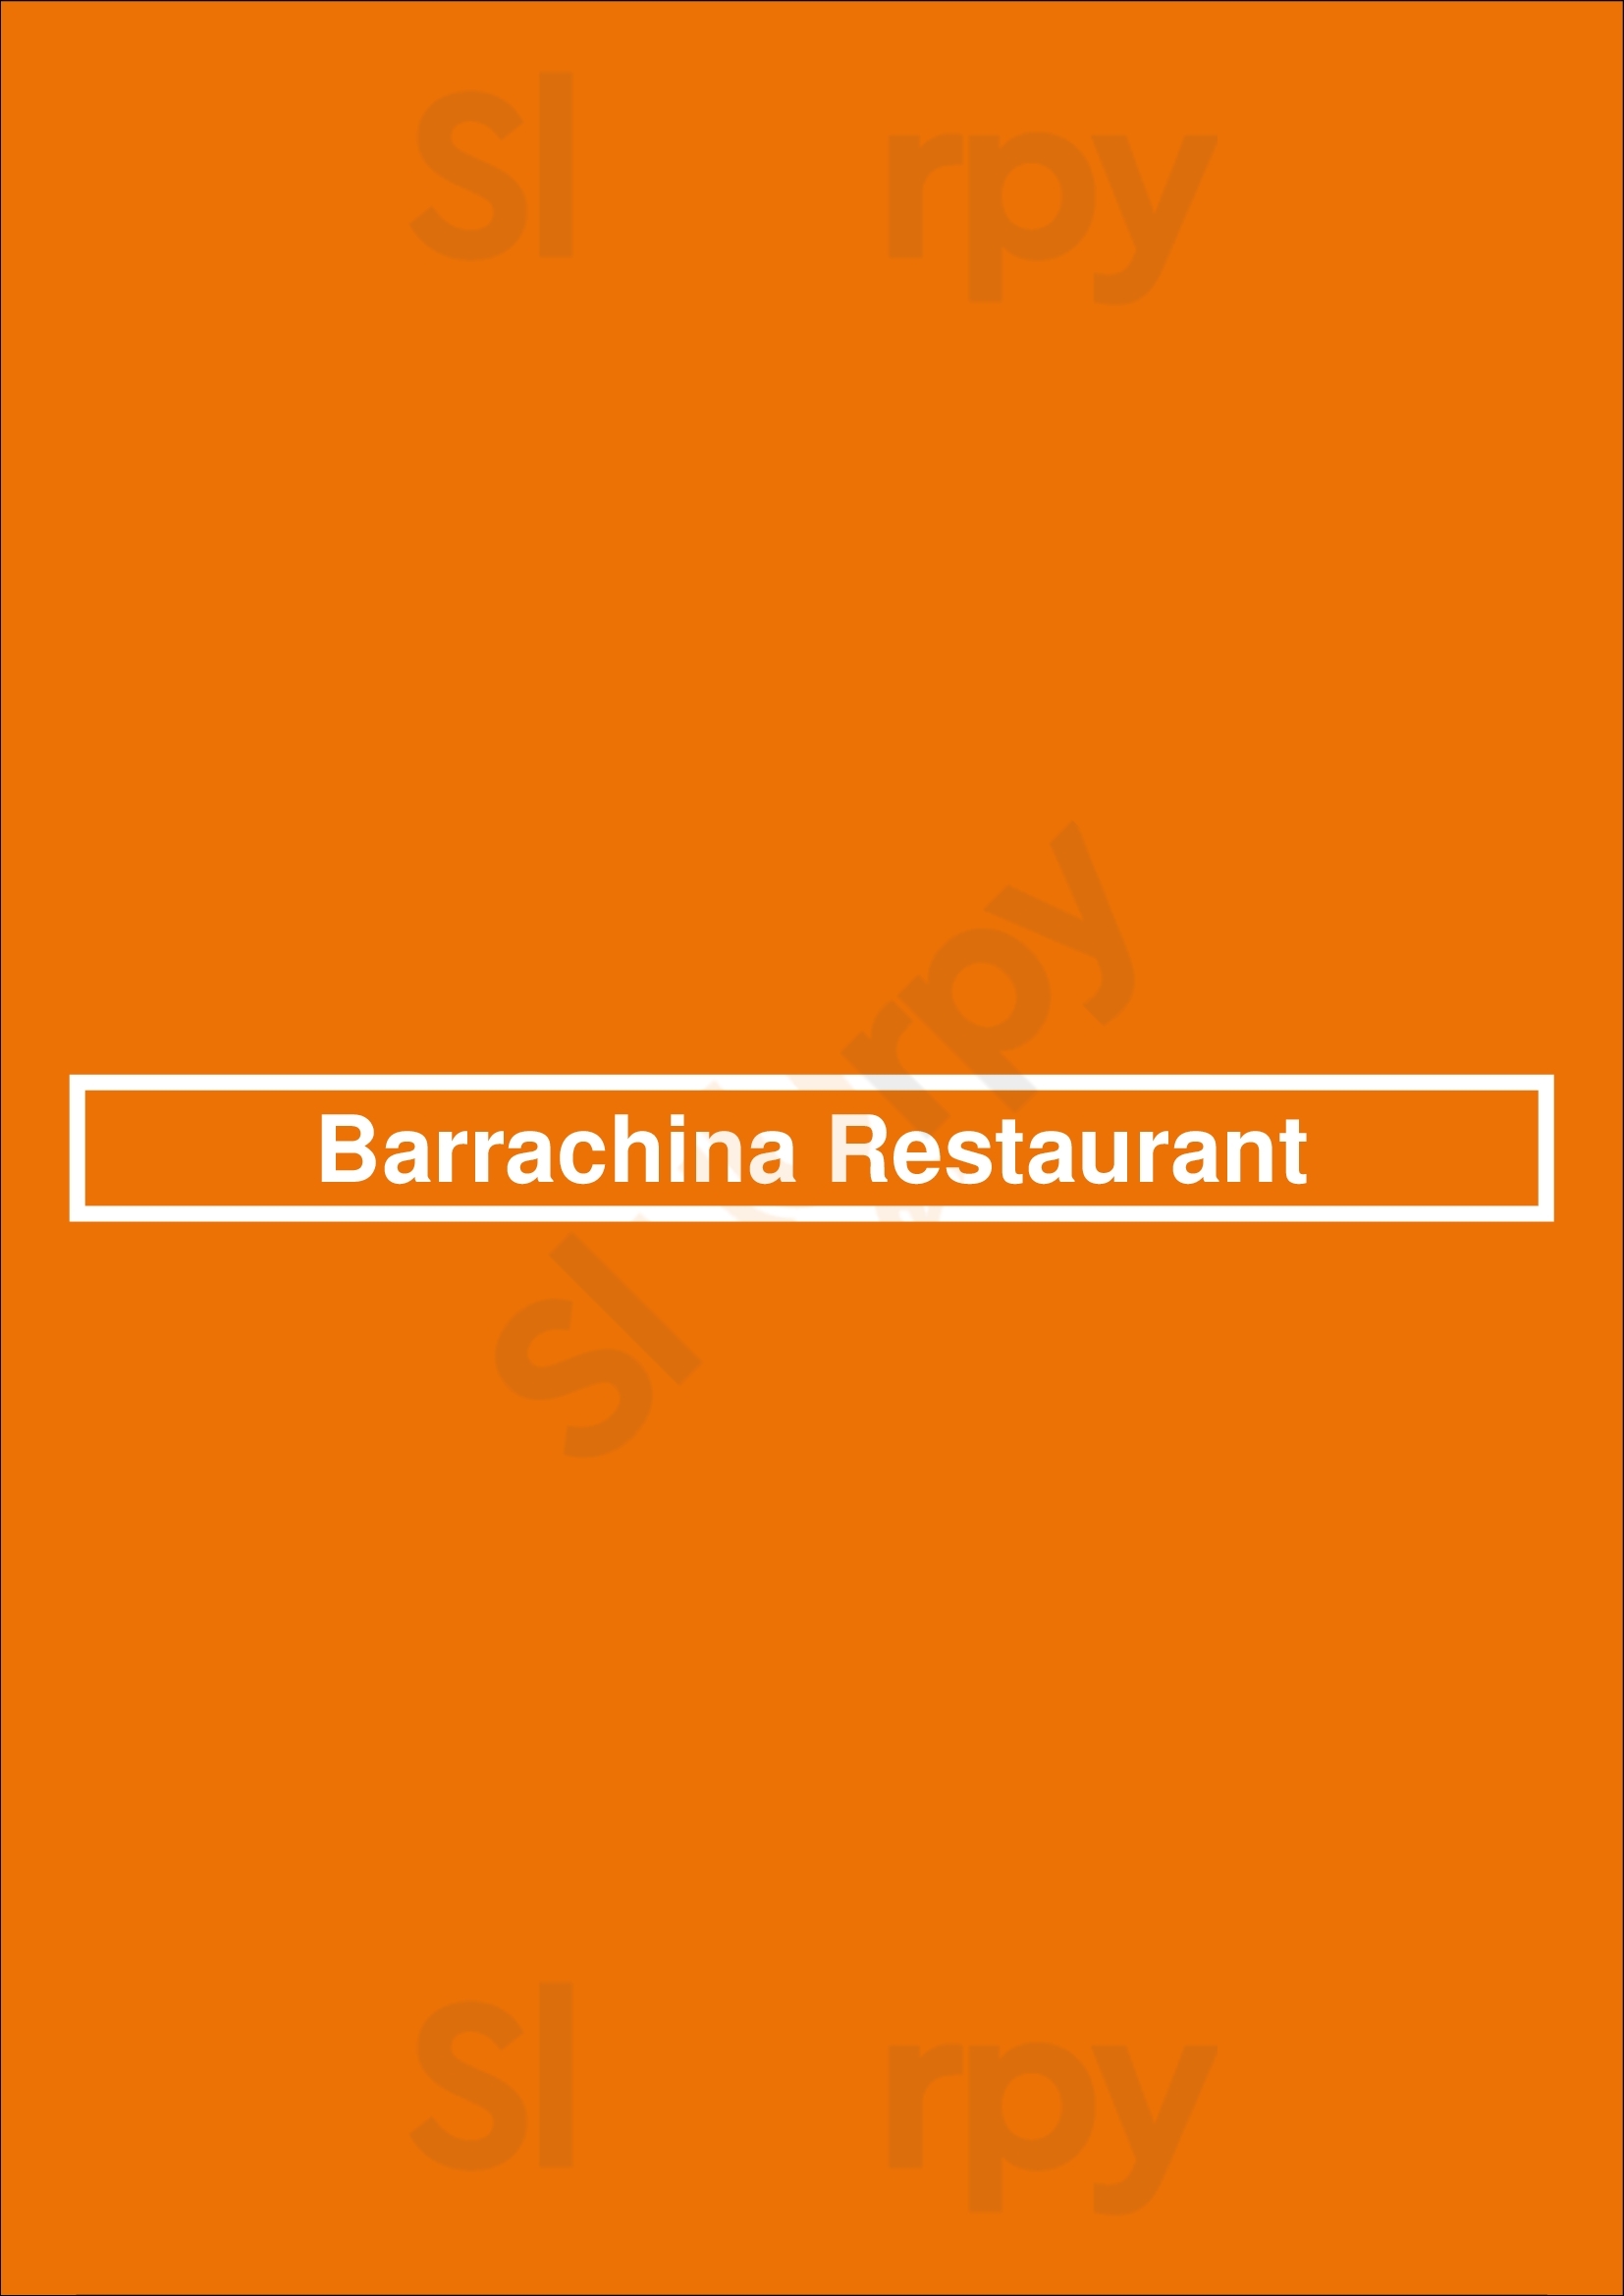 Barrachina Restaurant San Juan Menu - 1